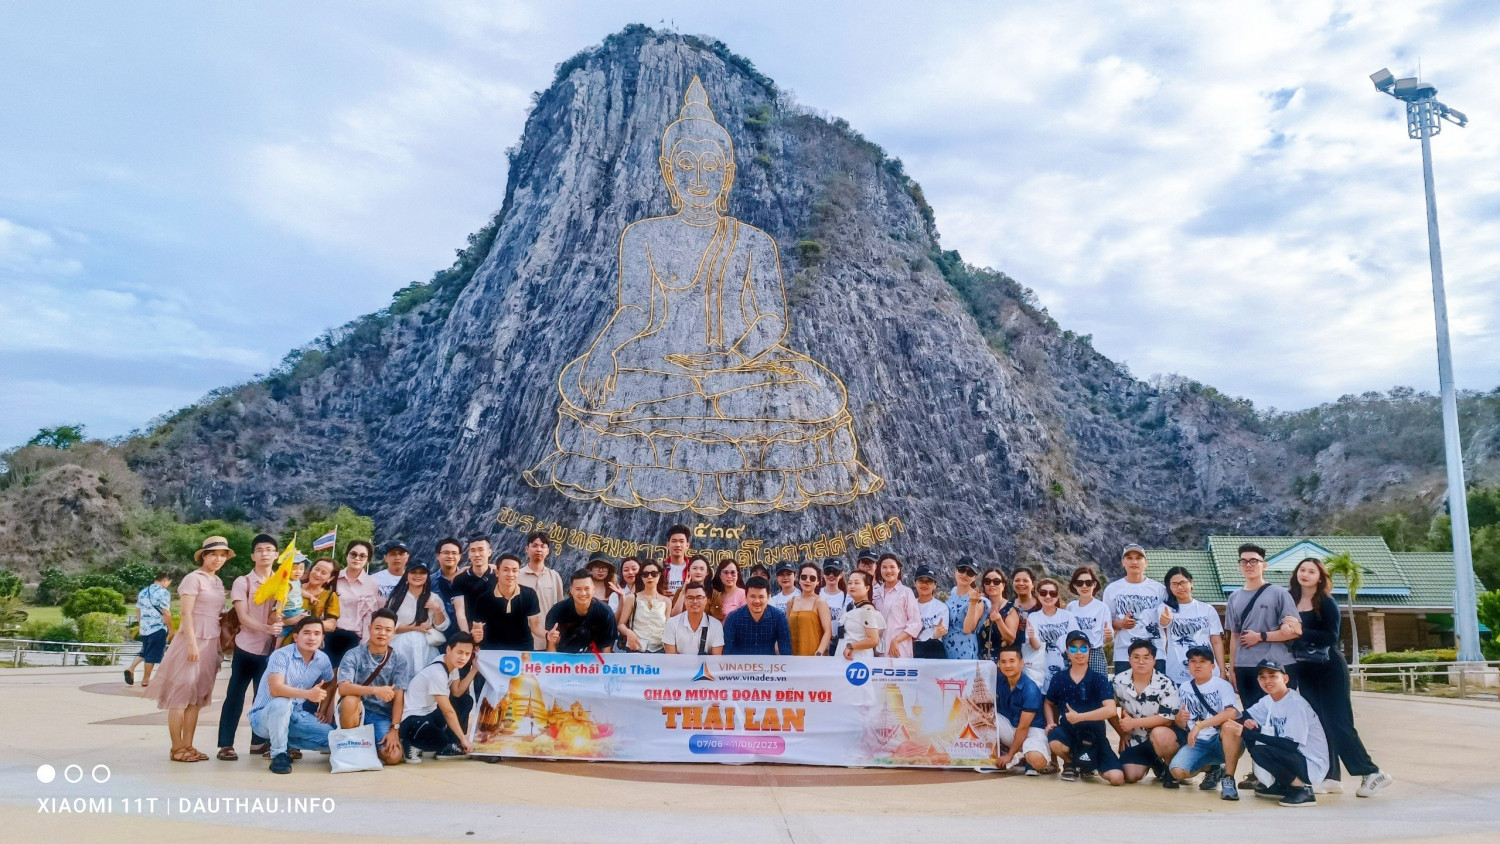 Thăm quan Trân Bảo Phật Sơn cùng các địa điểm du lịch nổi tiếng khác tại Pattaya